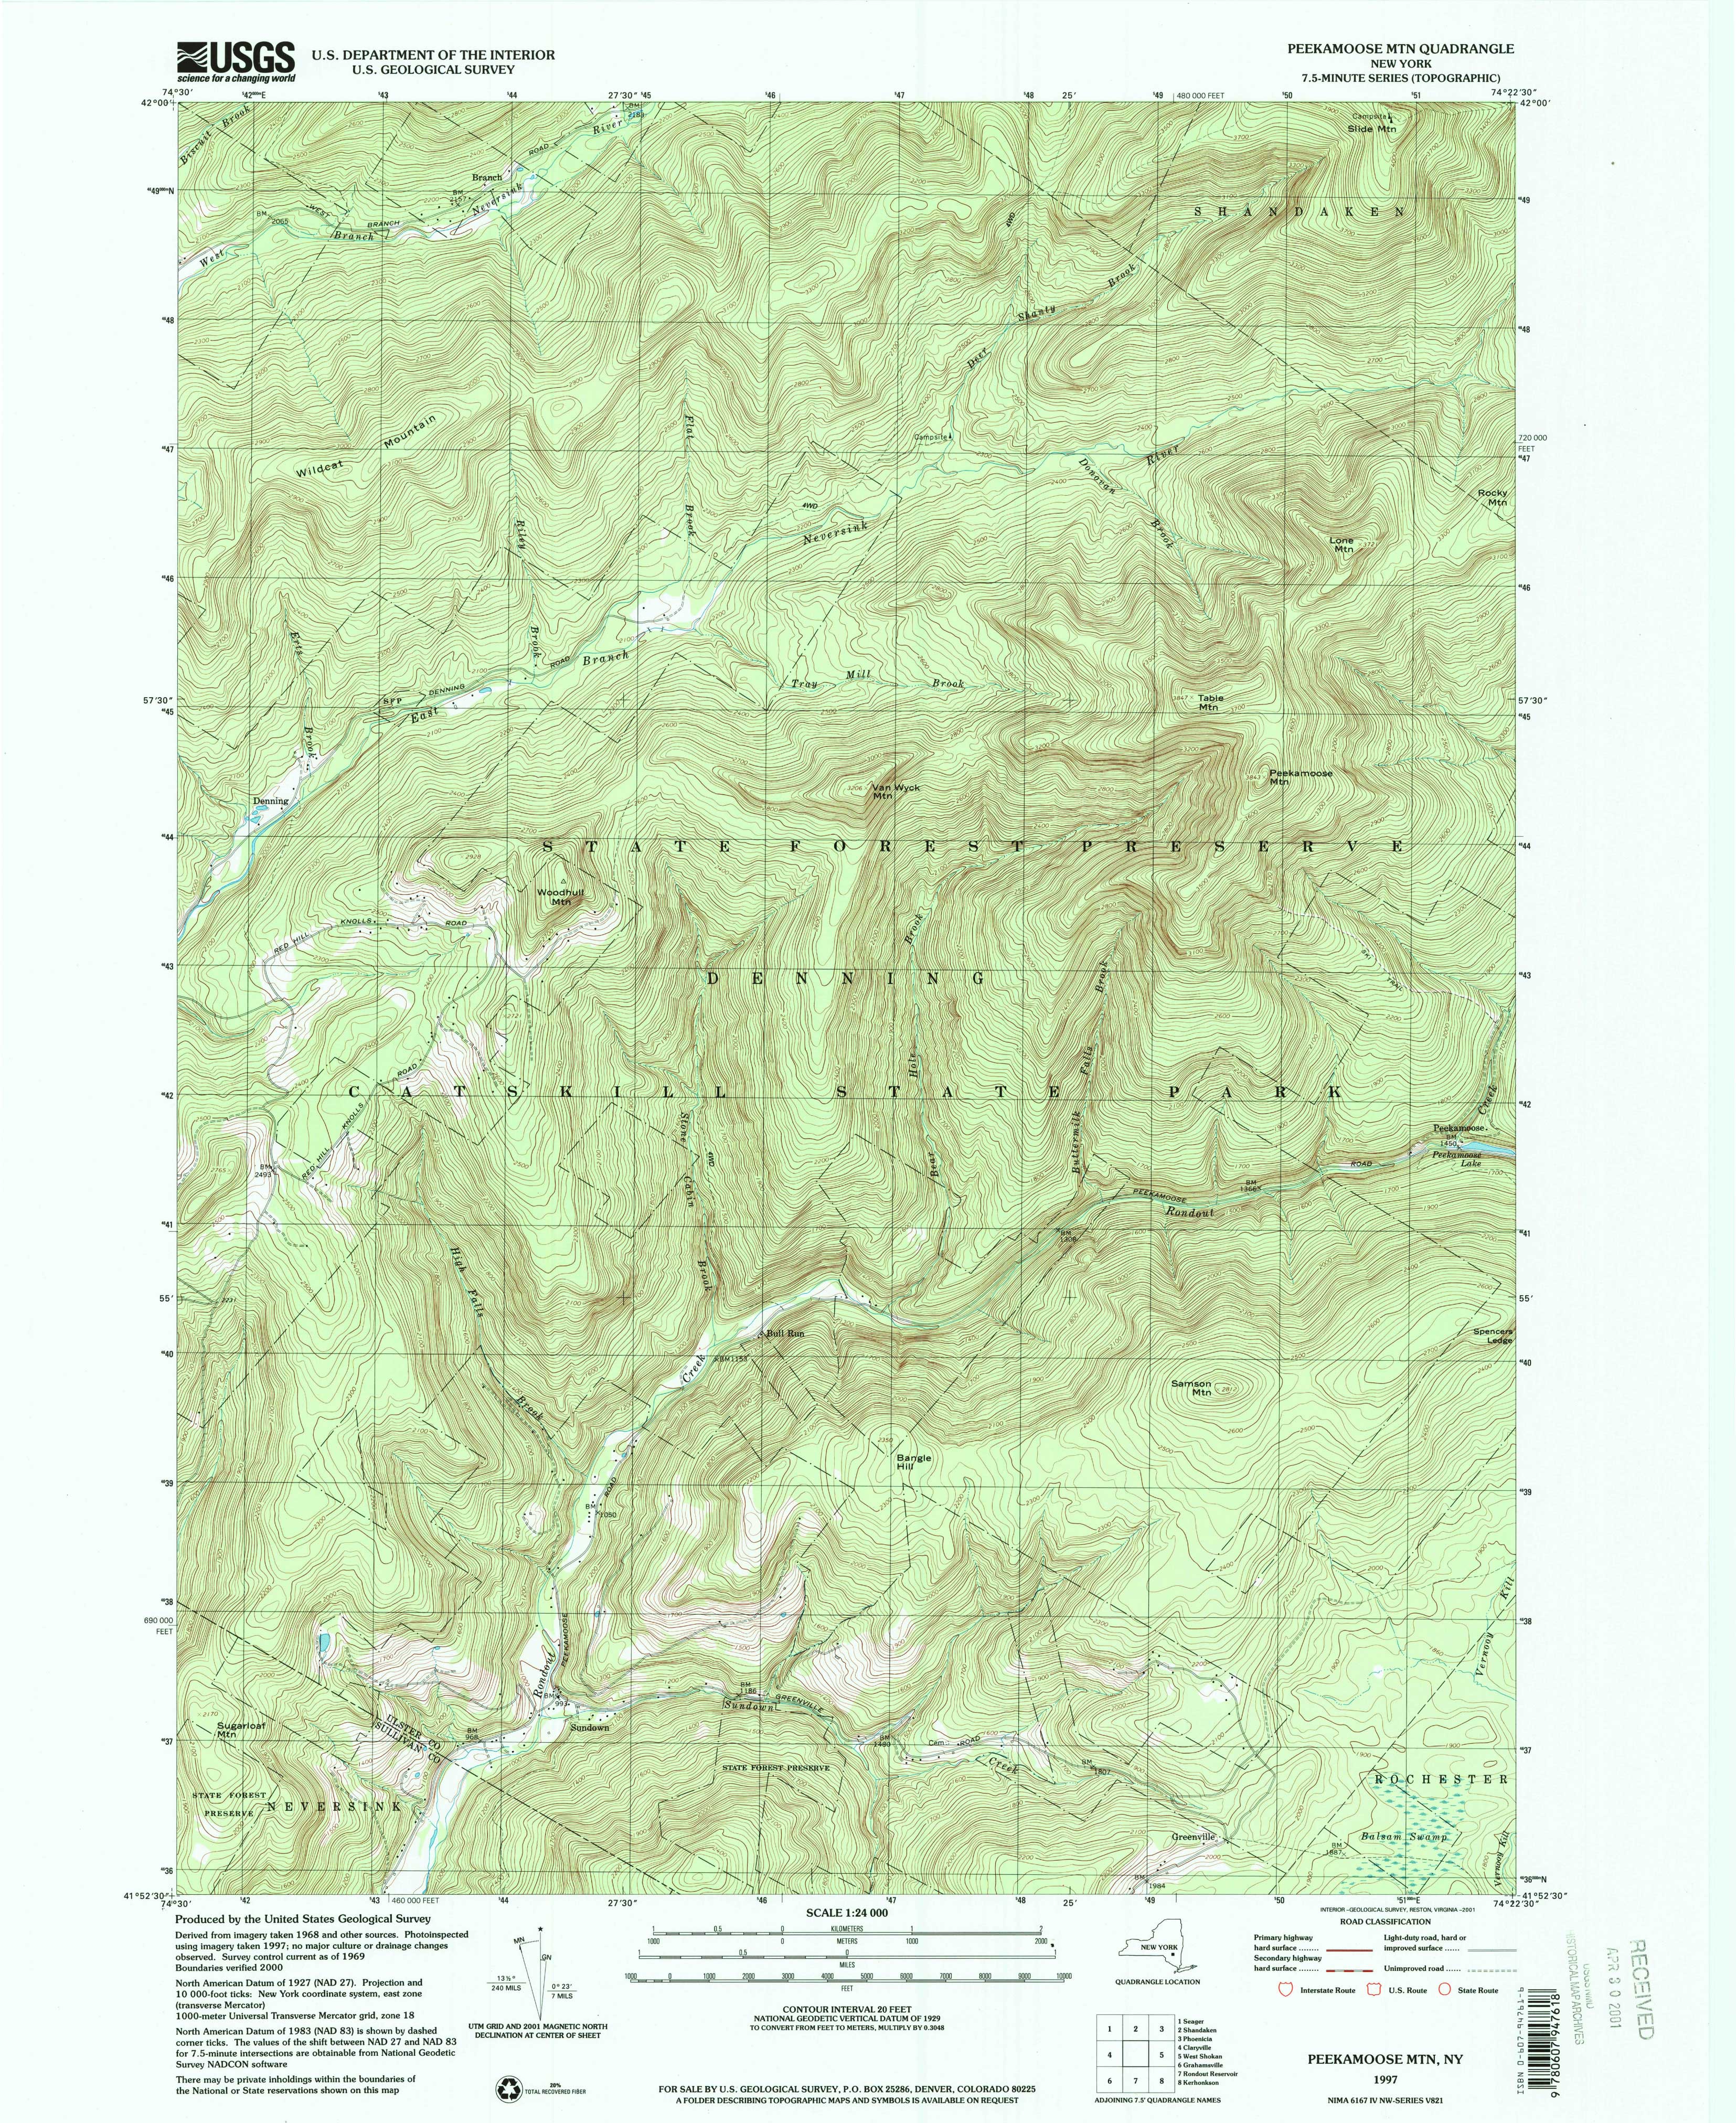 1997 USGS topographical map of Peekamoose